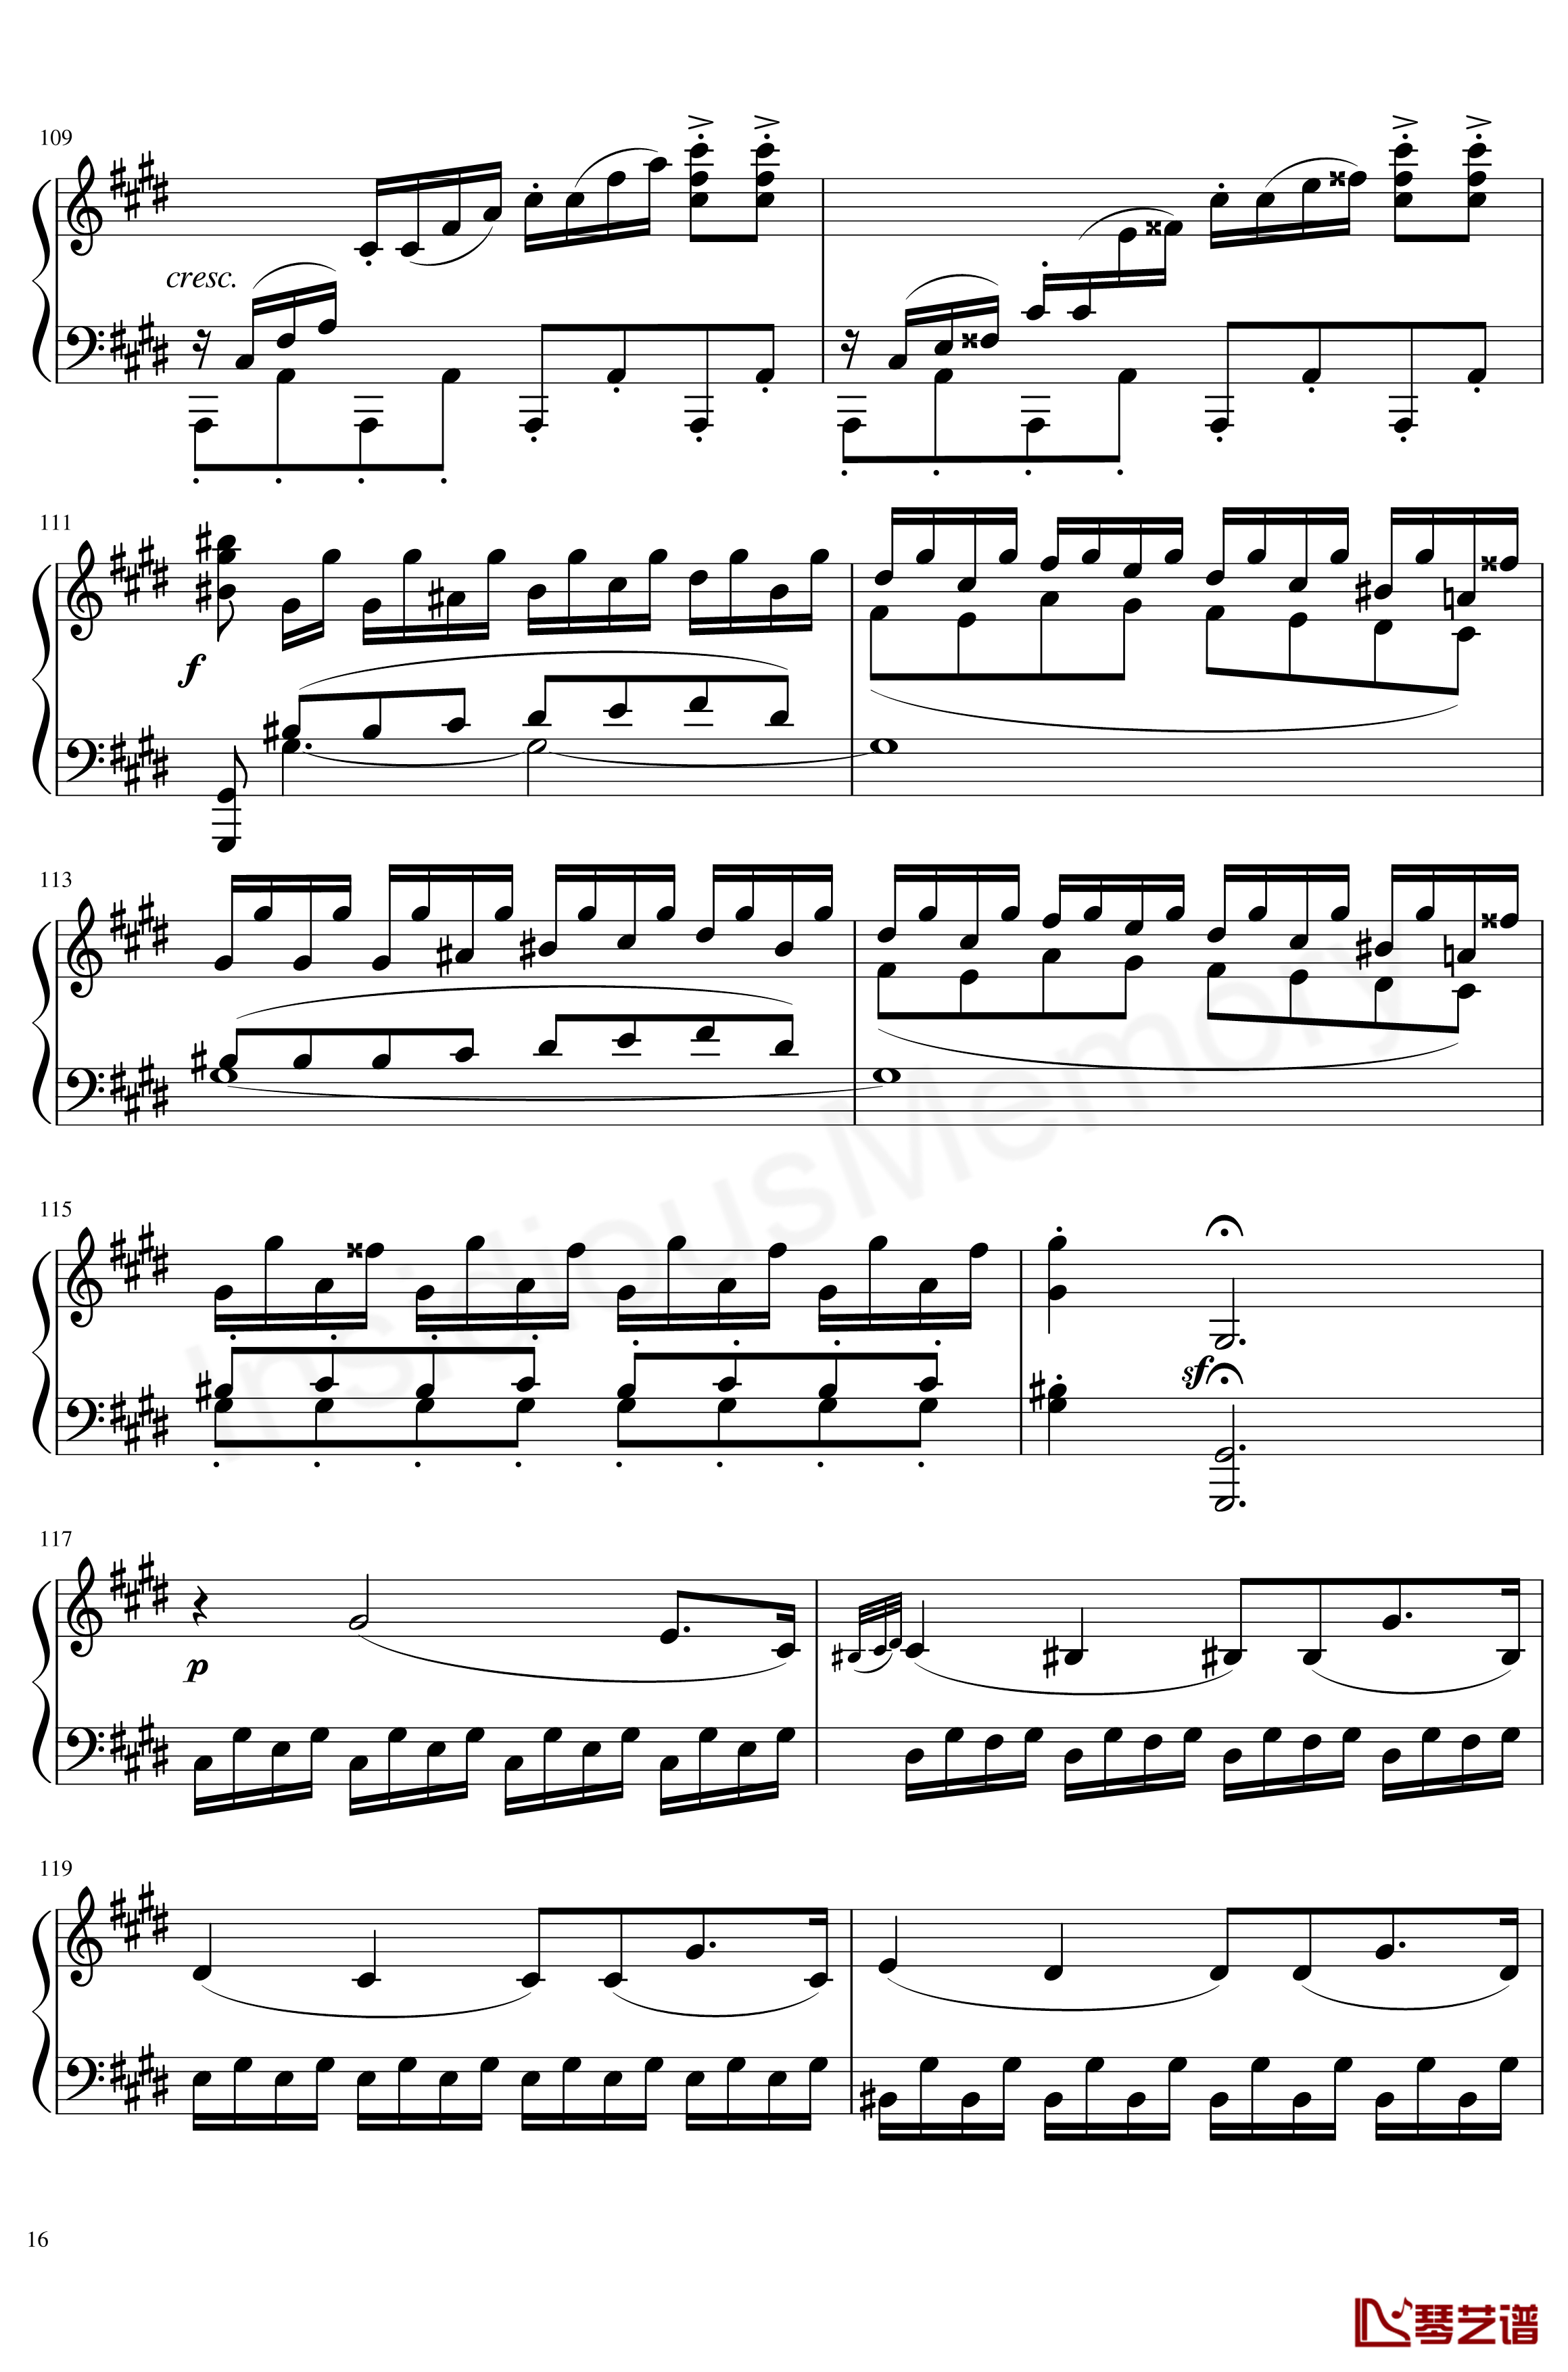 月光奏鸣曲钢琴谱-贝多芬-beethoven16